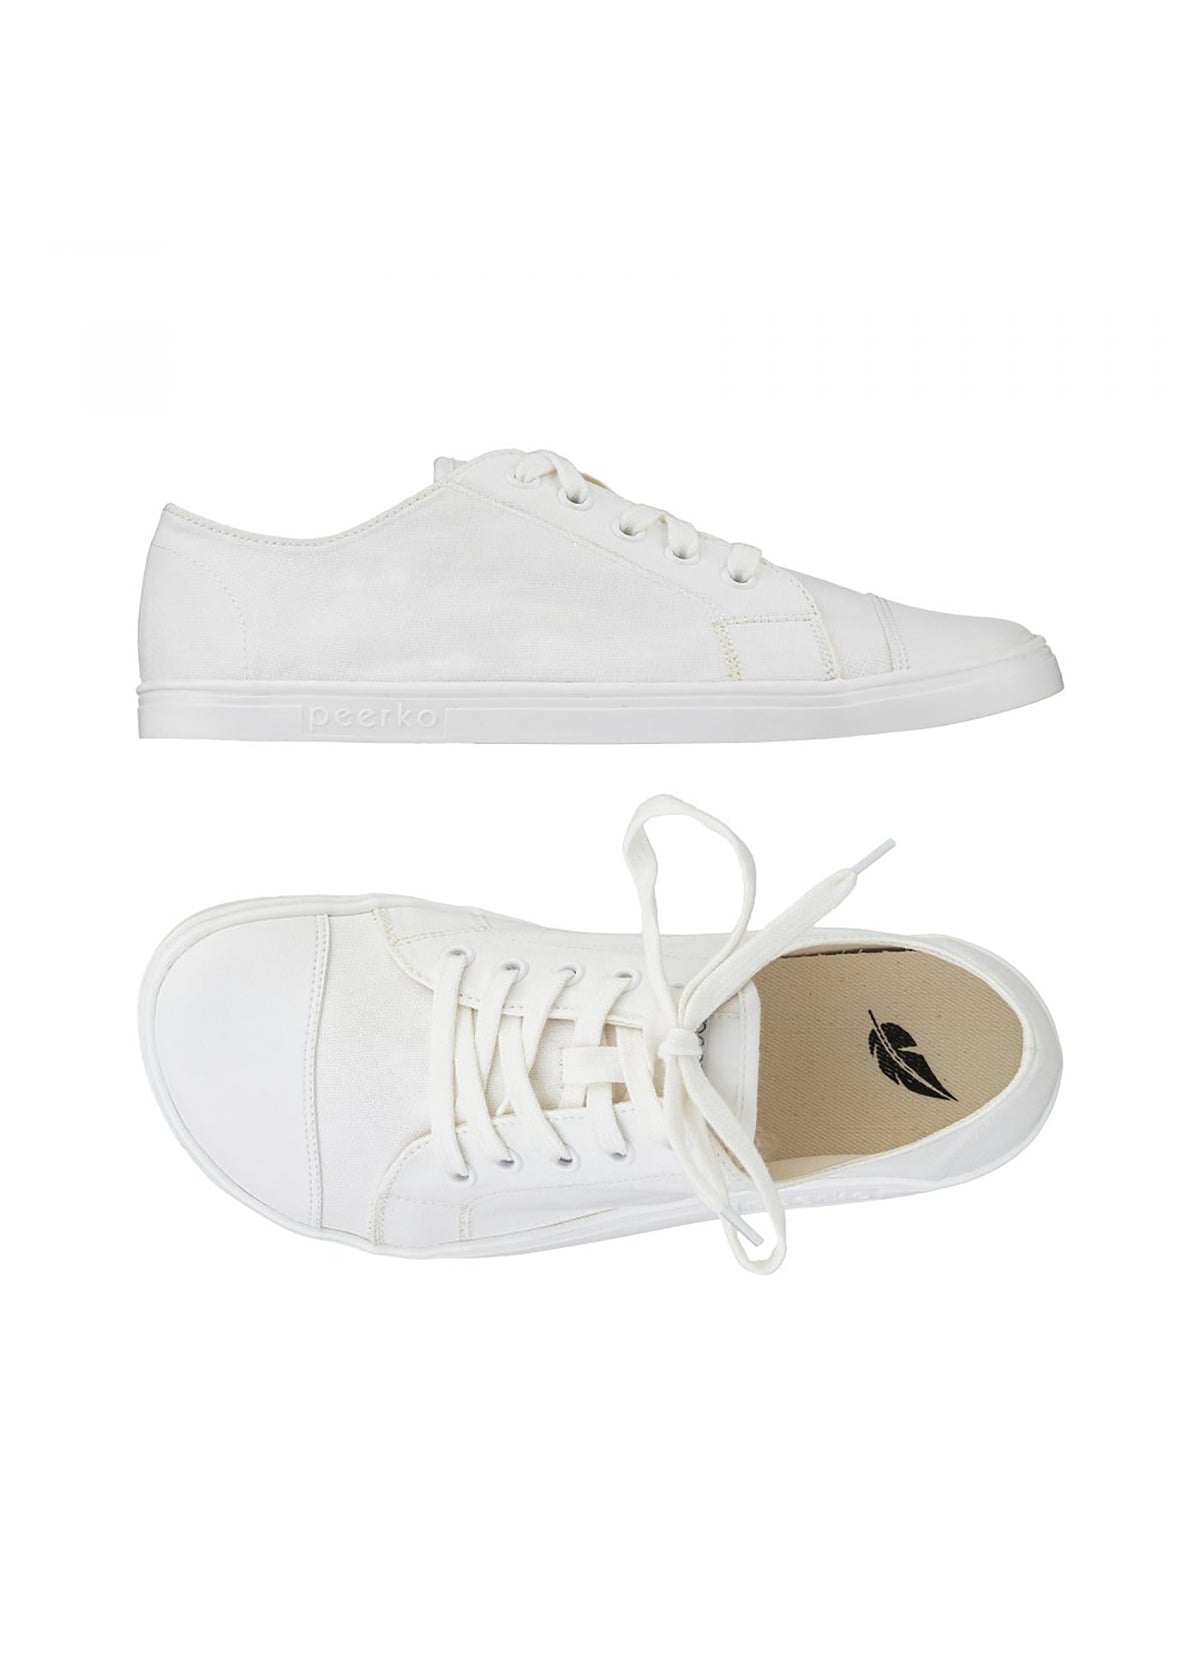 Barefoot shoes, Low-top sneakers - Origin Retro, white fabric, vegan